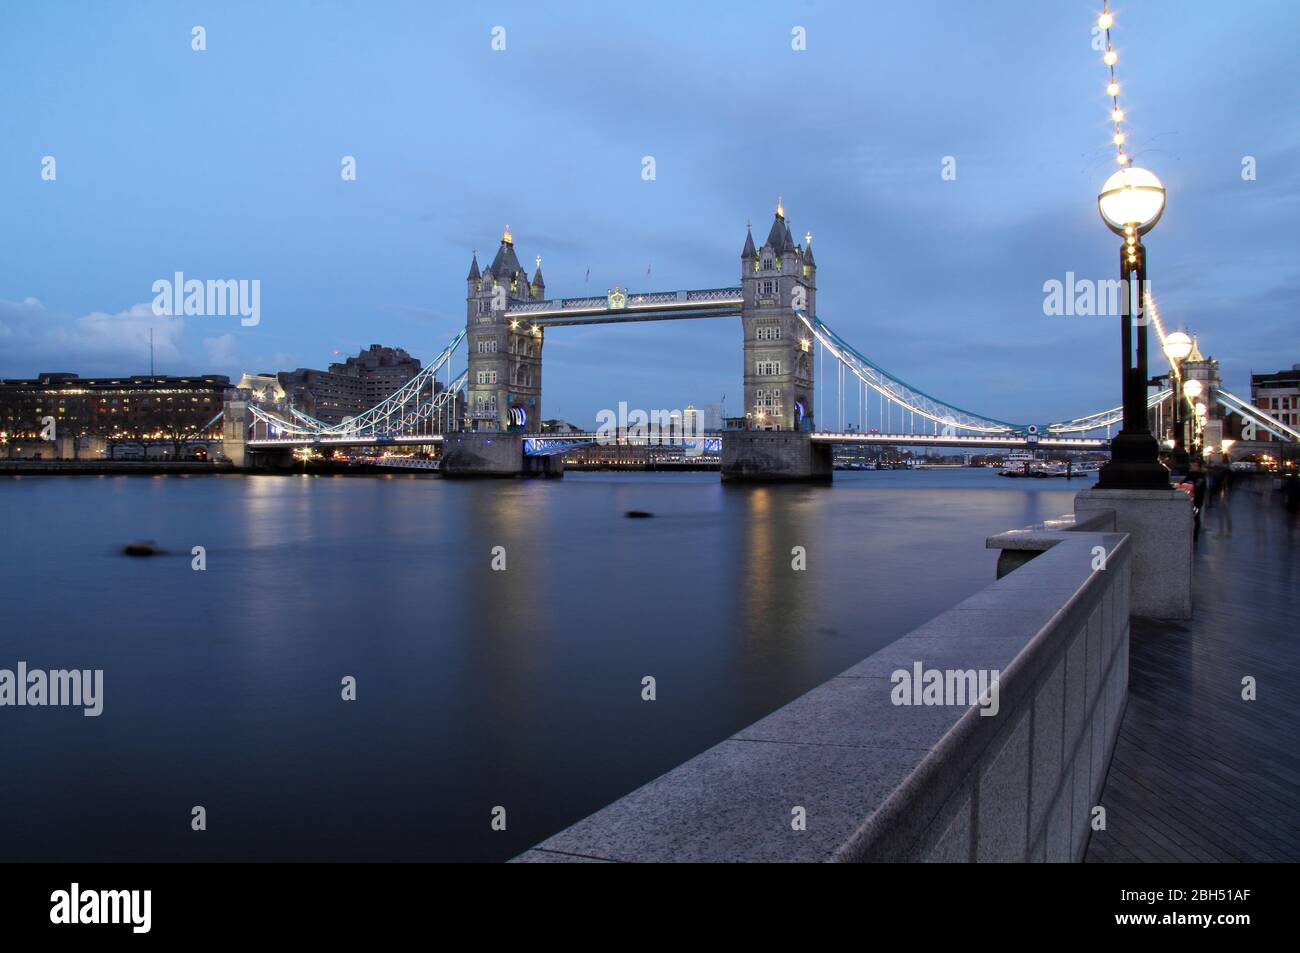 El mundialmente famoso Puente de Londres está a guardia sobre el río Támesis en la ciudad de Londres, Inglaterra el 13 de marzo de 2020 en Londres, Inglaterra Foto de stock